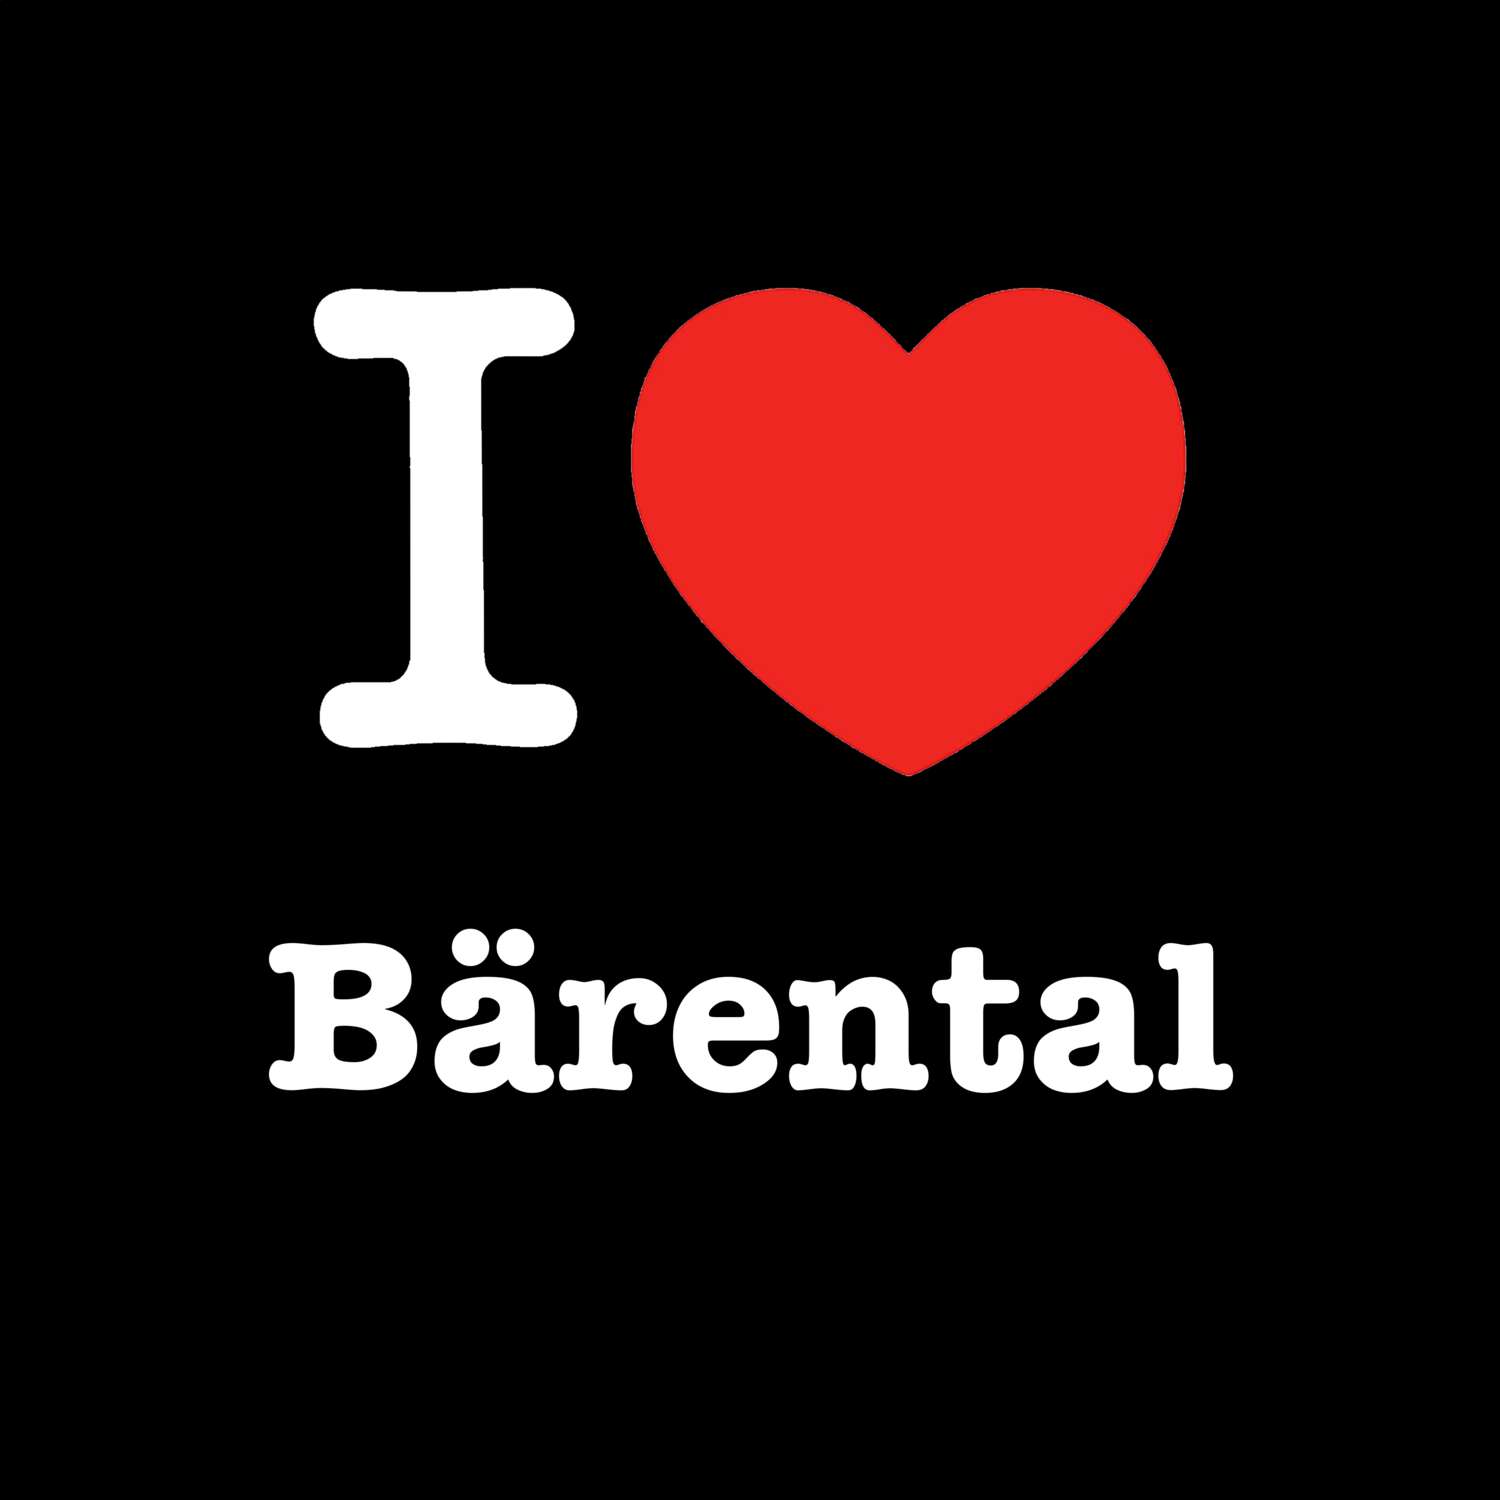 Bärental T-Shirt »I love«